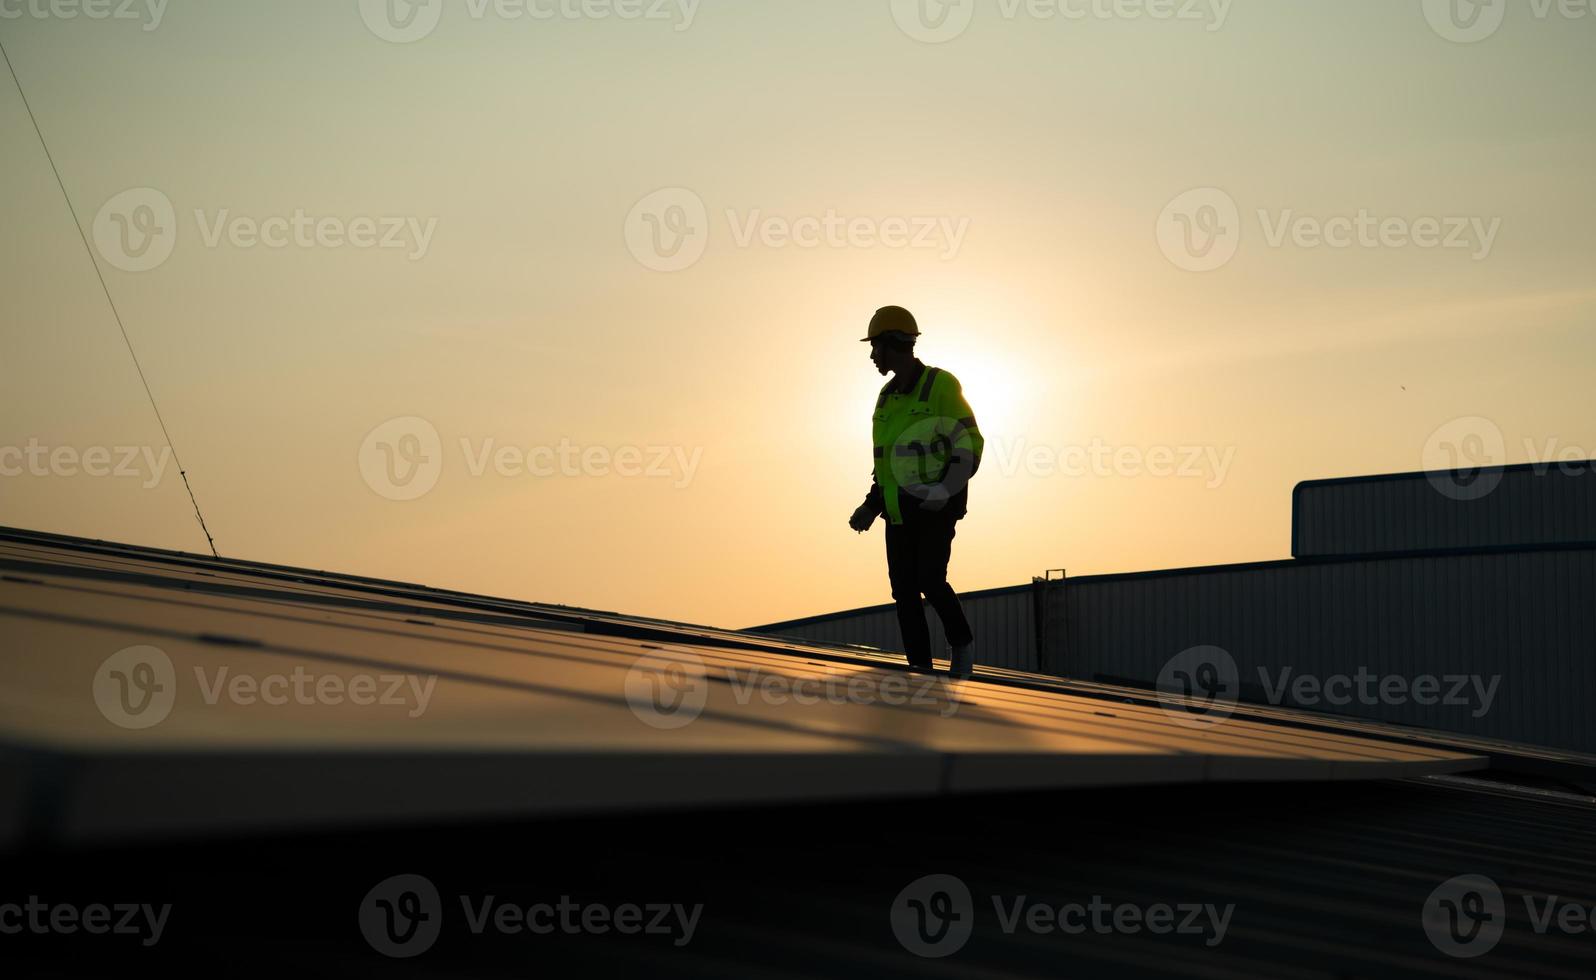 tekniker förse kvartals sol- cell underhåll tjänster på de fabrik tak foto